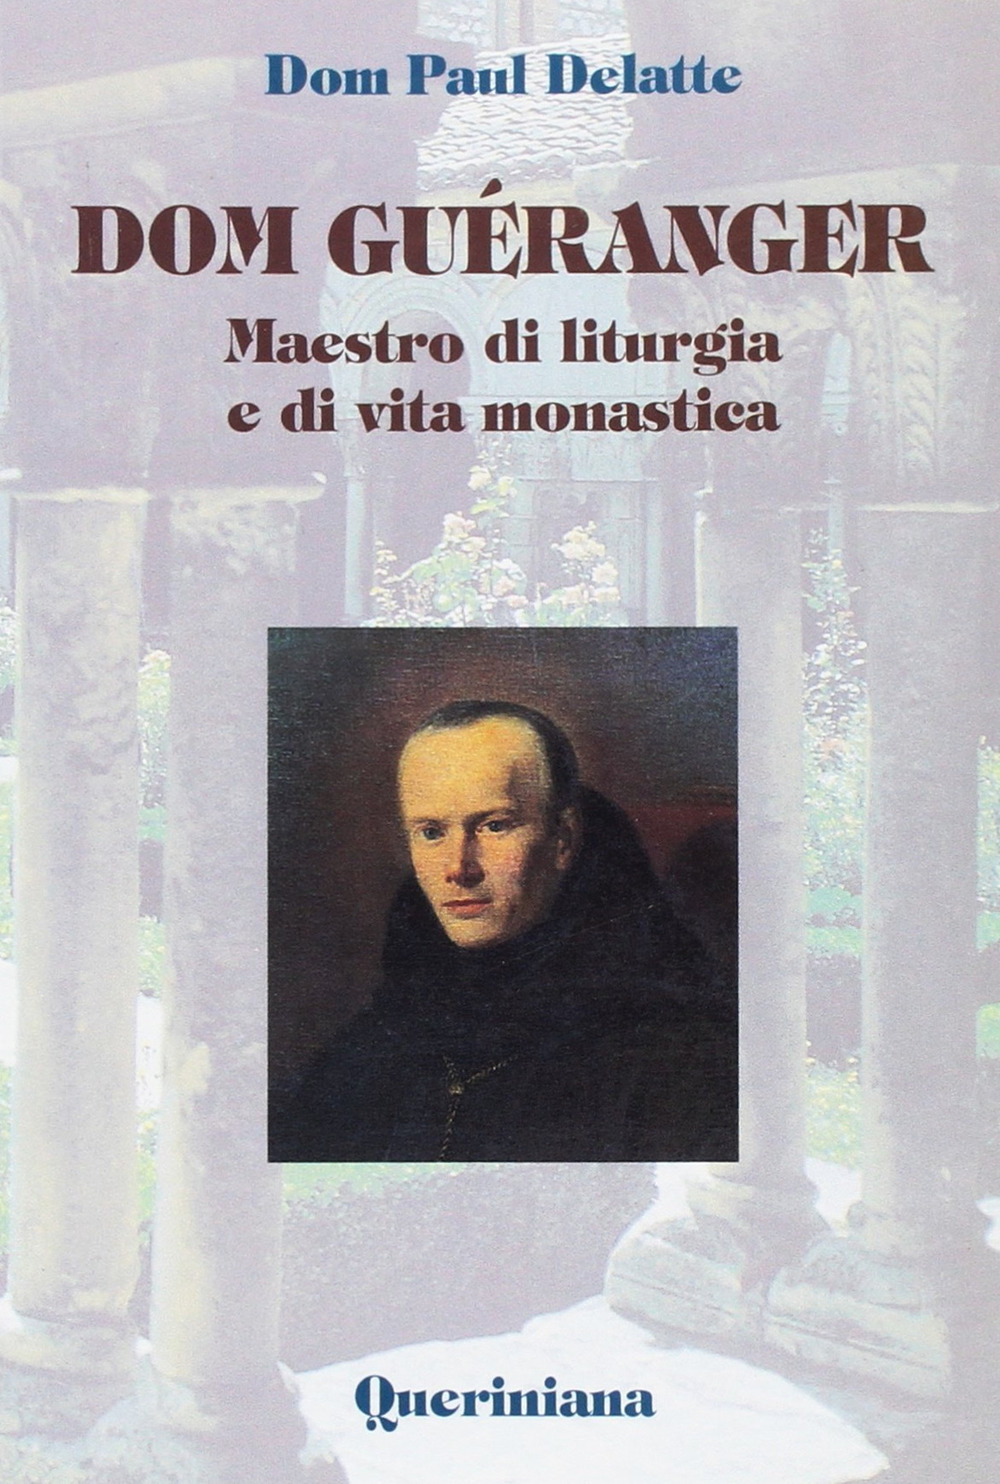 Libri Paul Delatte - Dom Gueranger. Maestro Di Liturgia E Di Vita Monastica NUOVO SIGILLATO, EDIZIONE DEL 01/01/1999 SUBITO DISPONIBILE